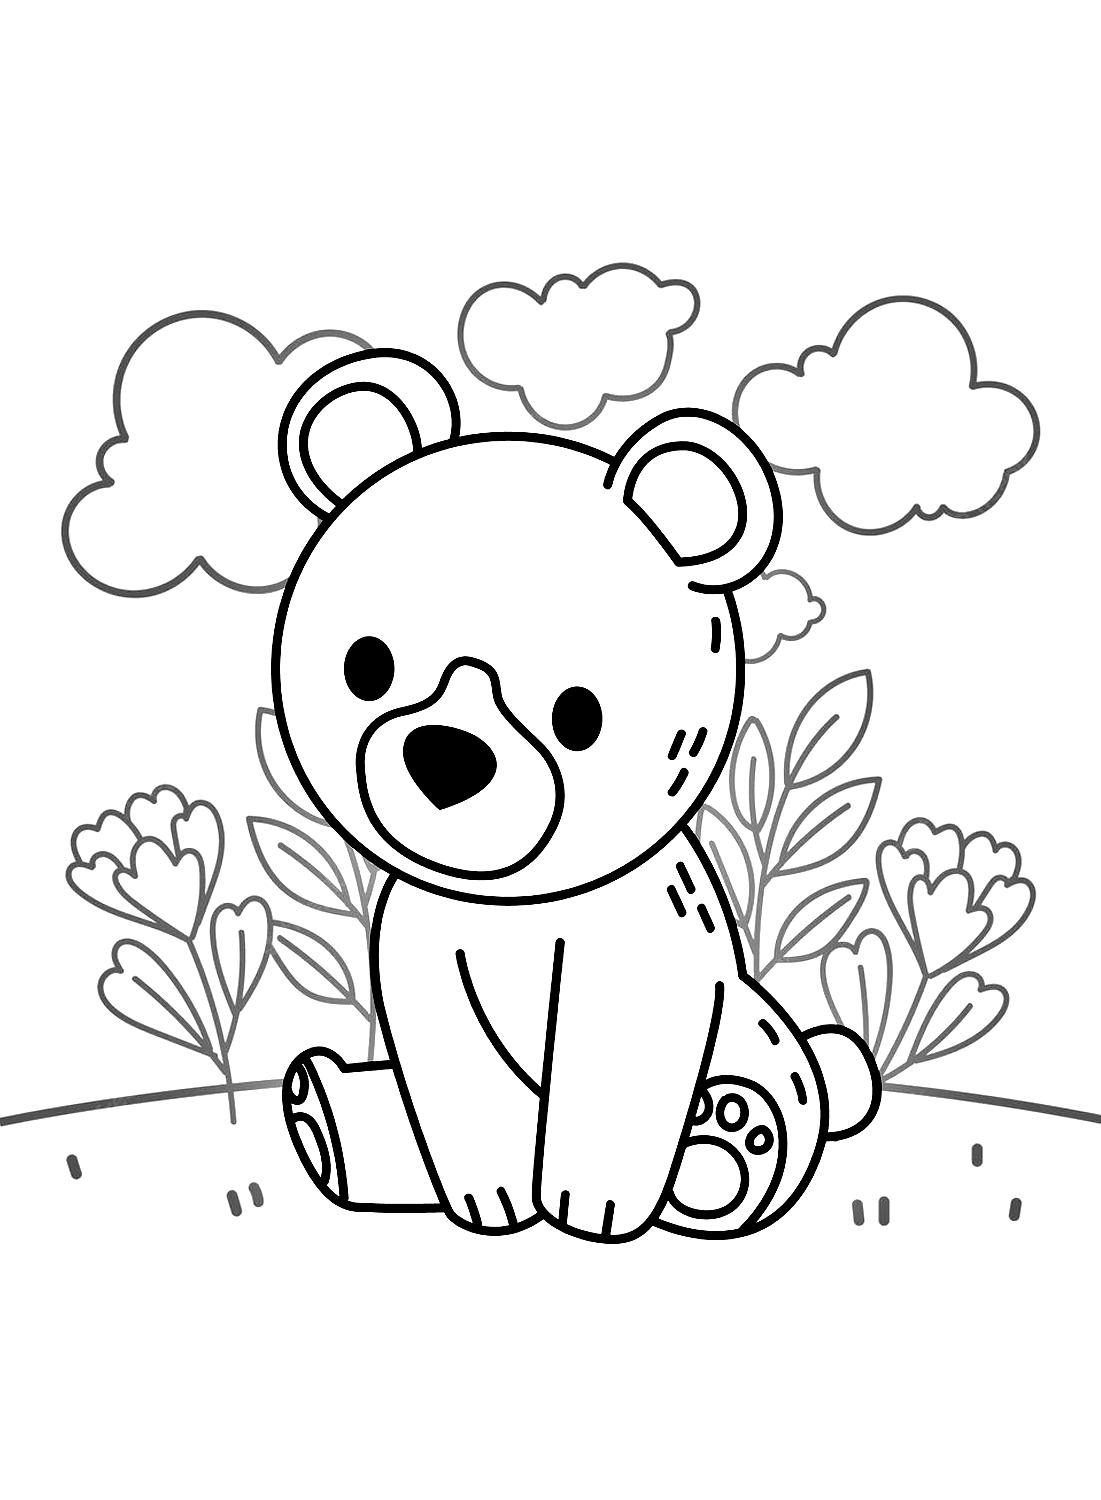 Desenhos para colorir de ursinhos de pelúcia de Teddy Bear